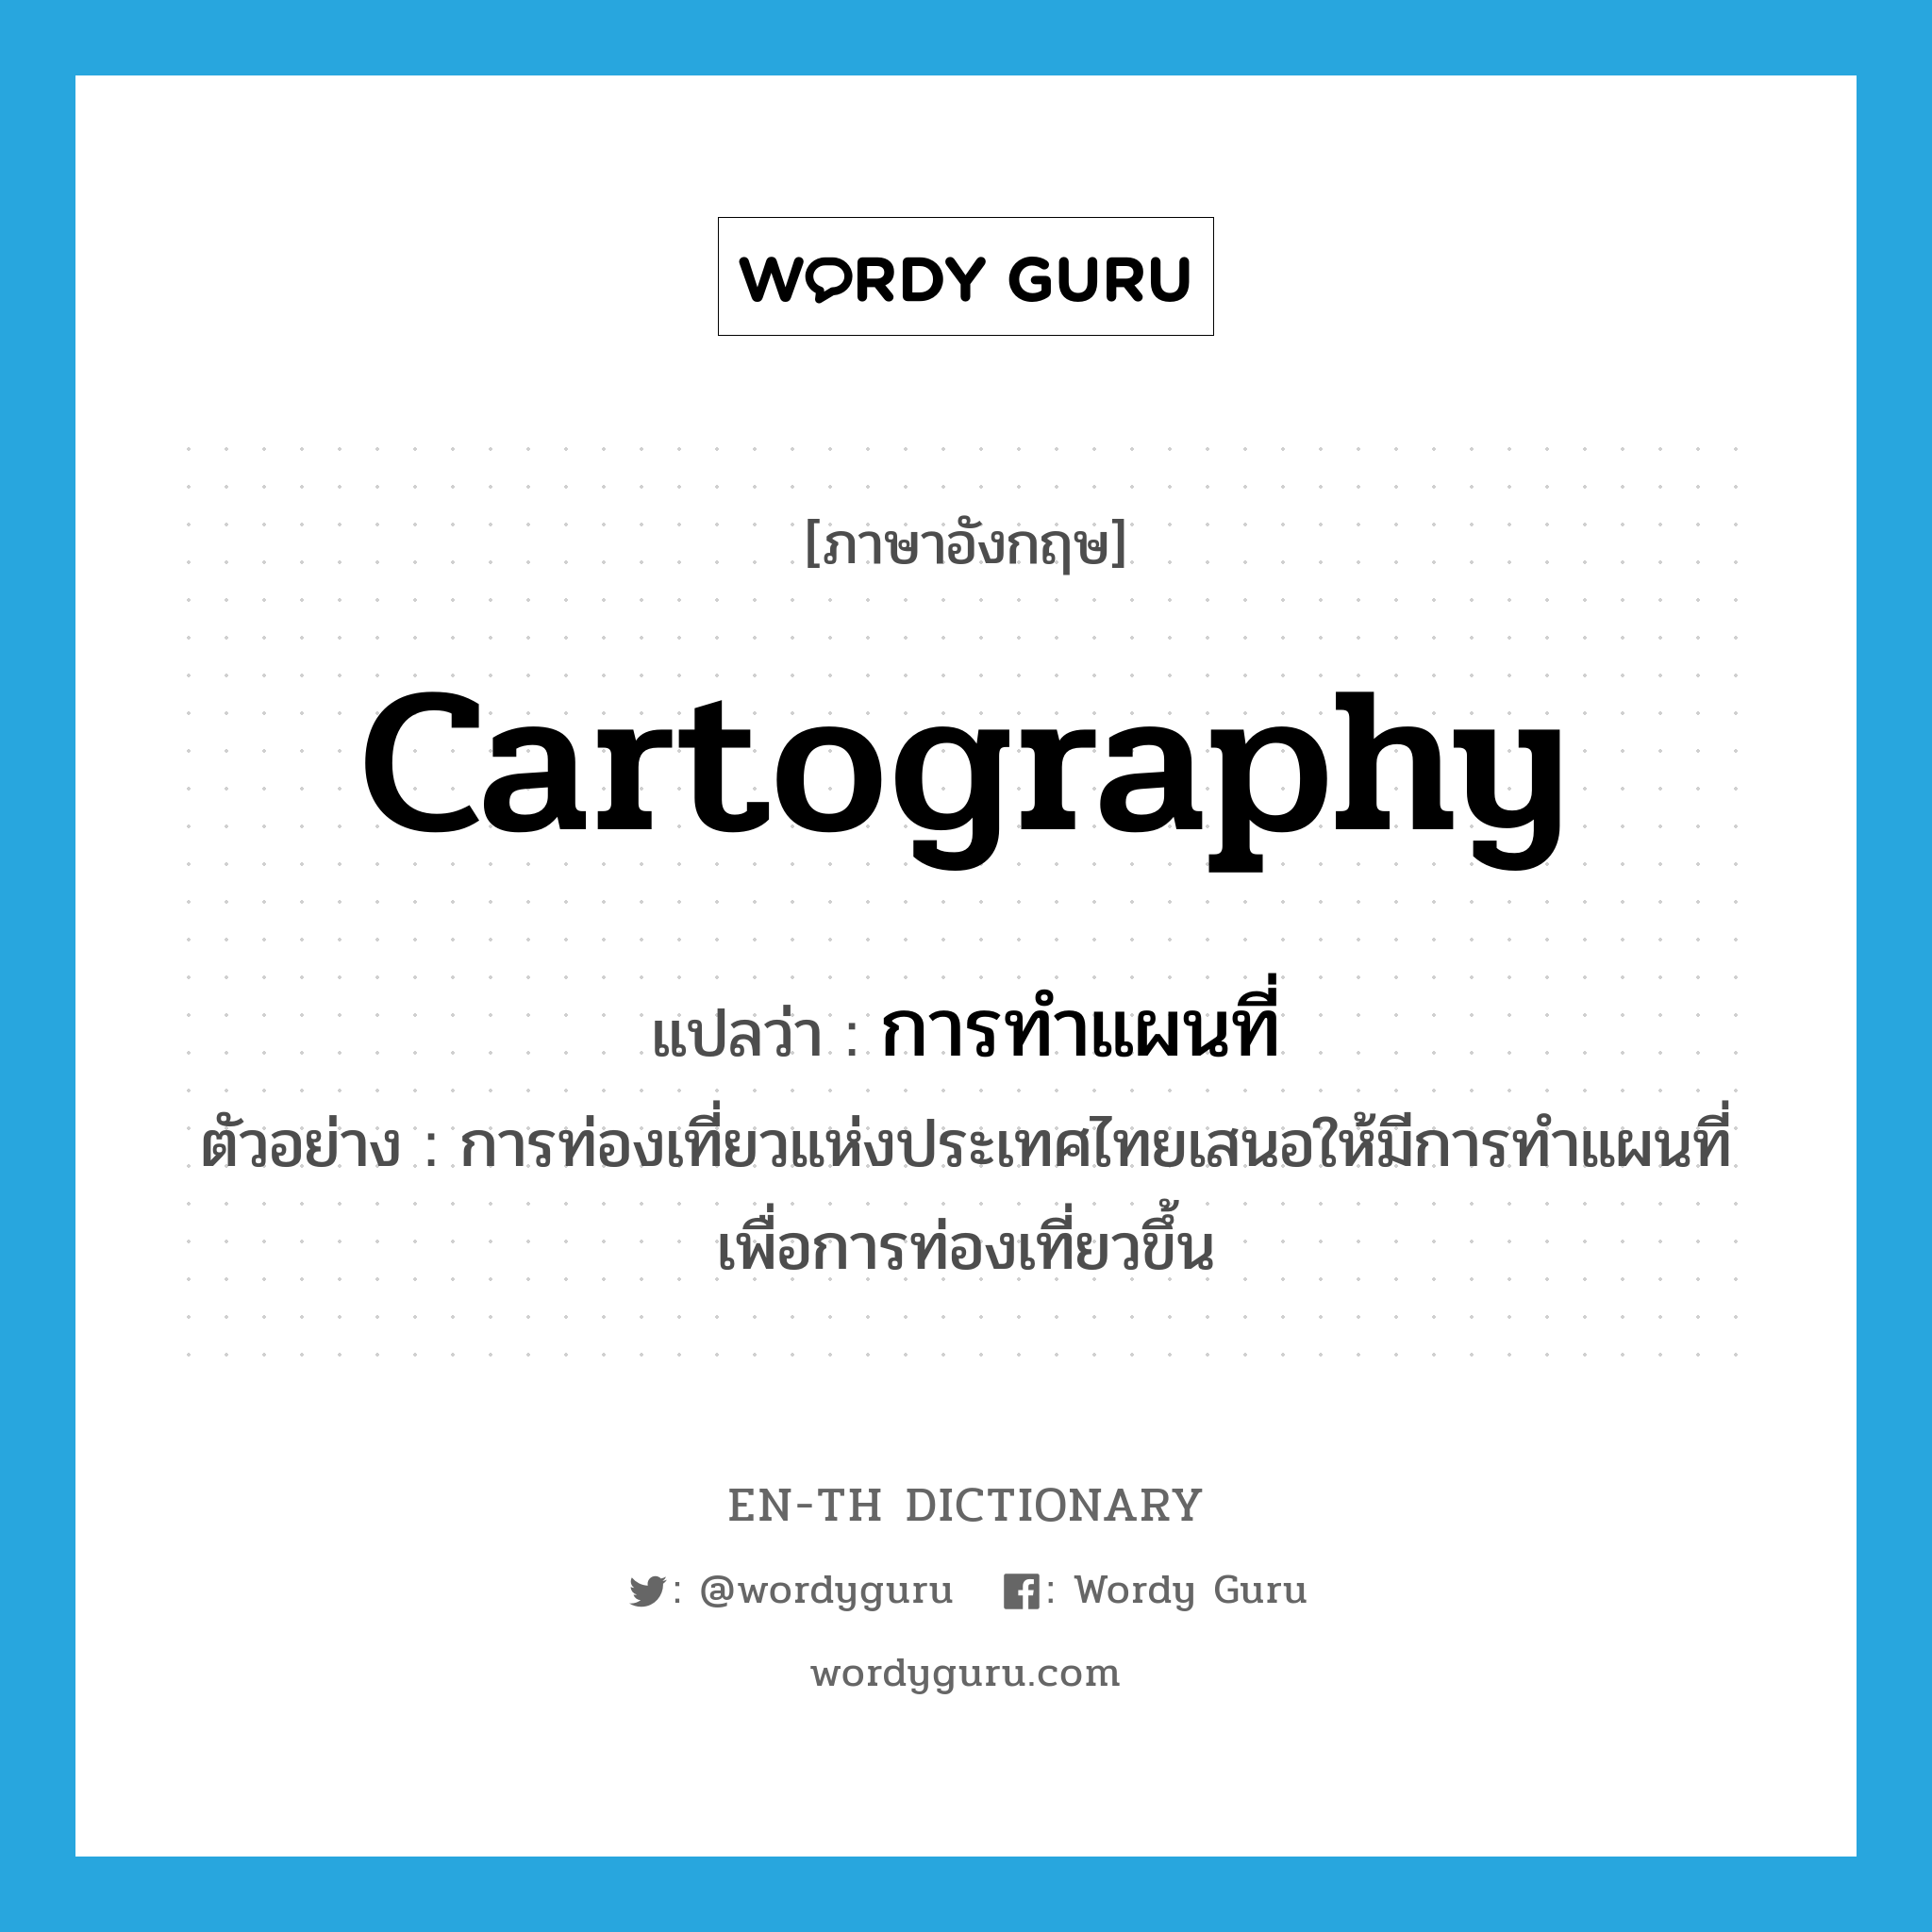 cartography แปลว่า?, คำศัพท์ภาษาอังกฤษ cartography แปลว่า การทำแผนที่ ประเภท N ตัวอย่าง การท่องเที่ยวแห่งประเทศไทยเสนอให้มีการทำแผนที่เพื่อการท่องเที่ยวขึ้น หมวด N